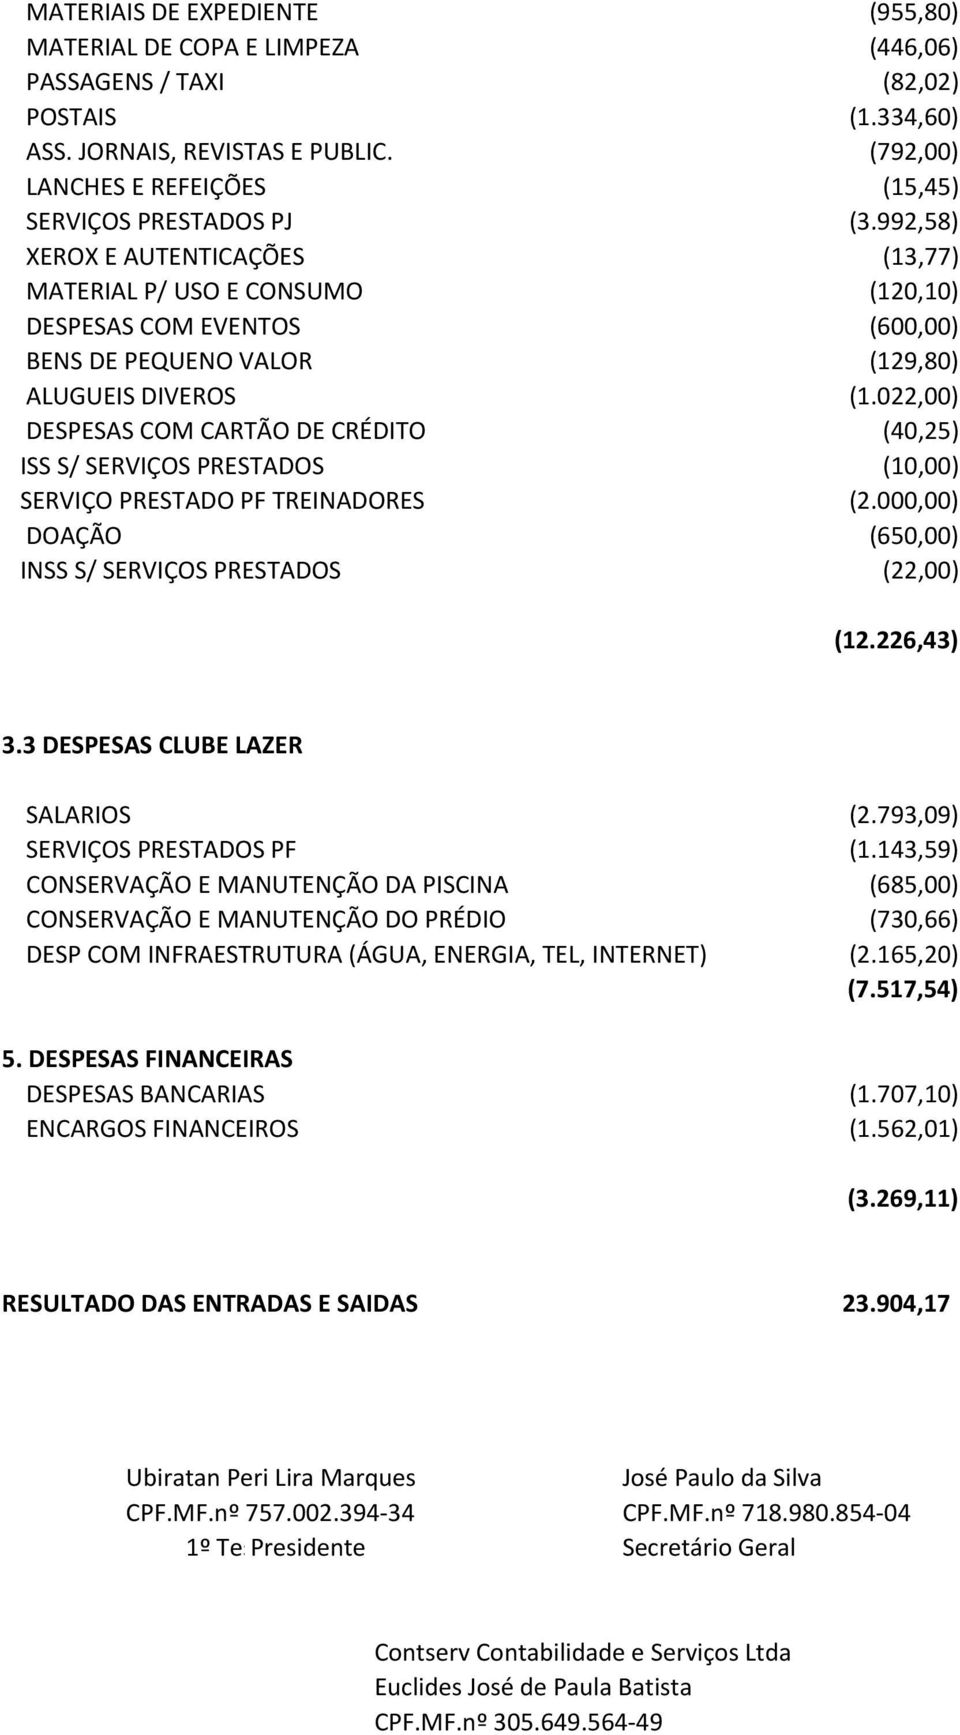 992,58) XEROX E AUTENTICAÇÕES (13,77) MATERIAL P/ USO E CONSUMO (120,10) DESPESAS COM EVENTOS (600,00) BENS DE PEQUENO VALOR (129,80) ALUGUEIS DIVEROS (1.